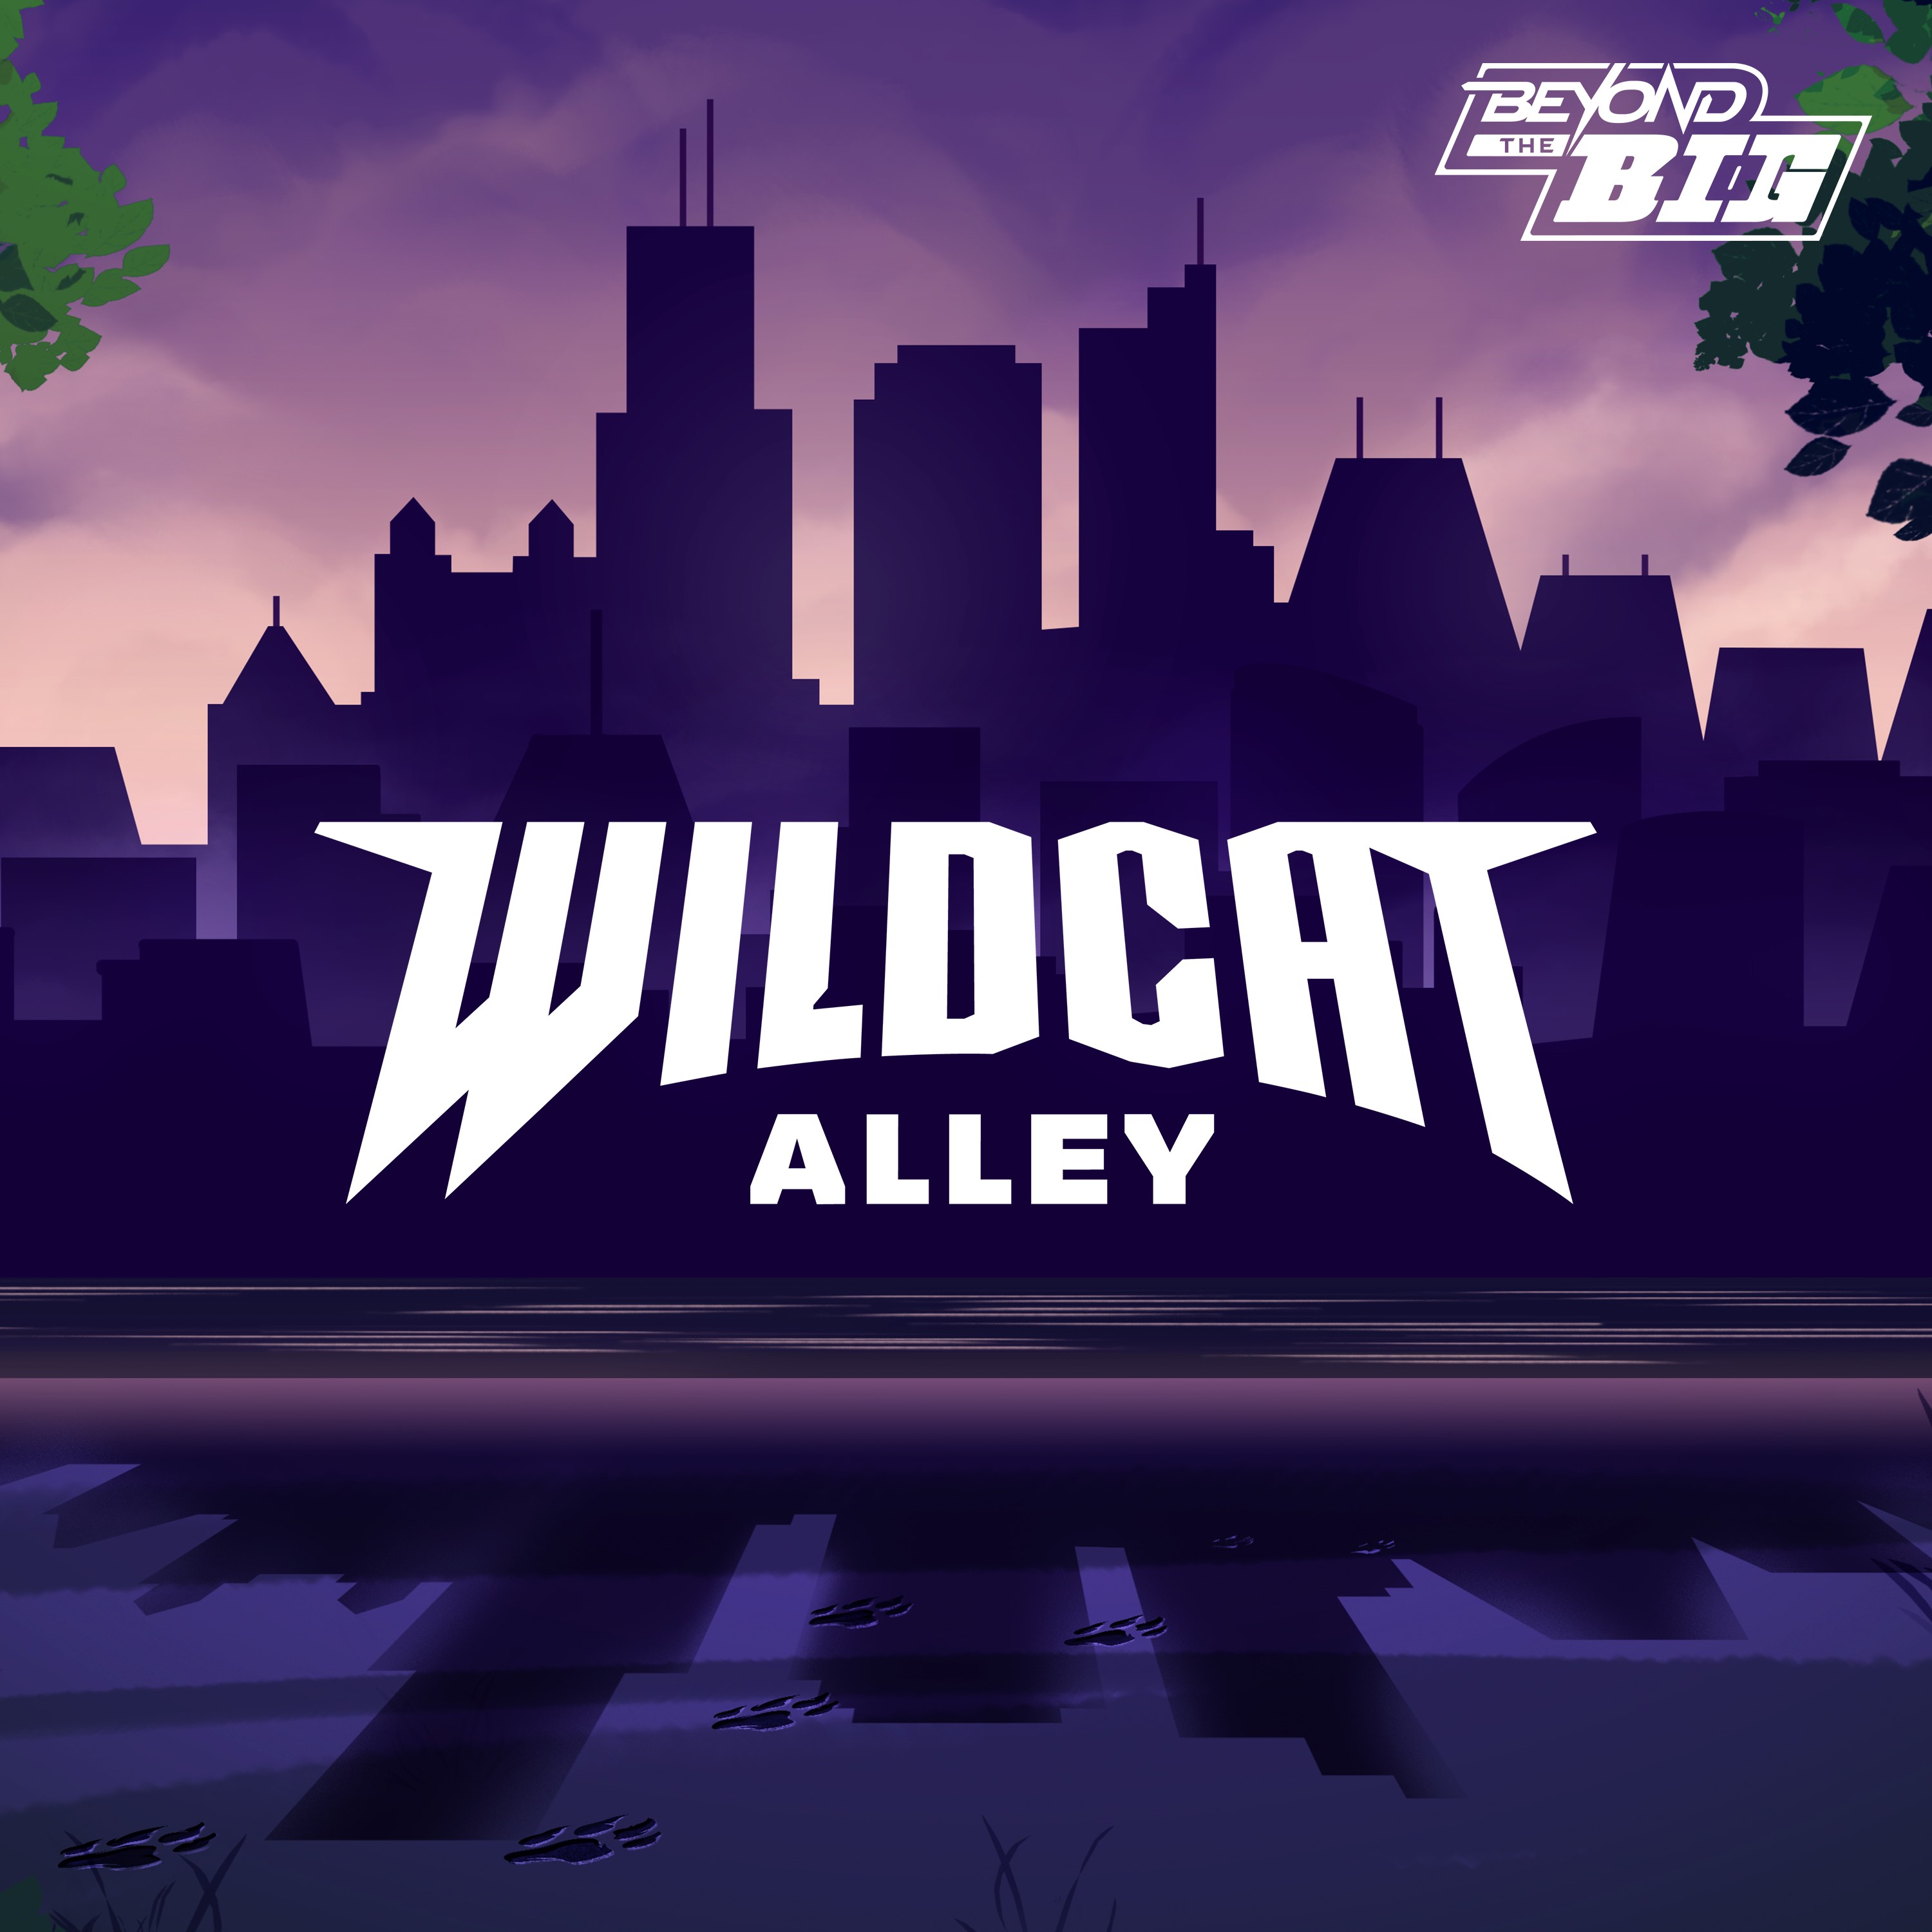 Artwork for Wildcat Alley